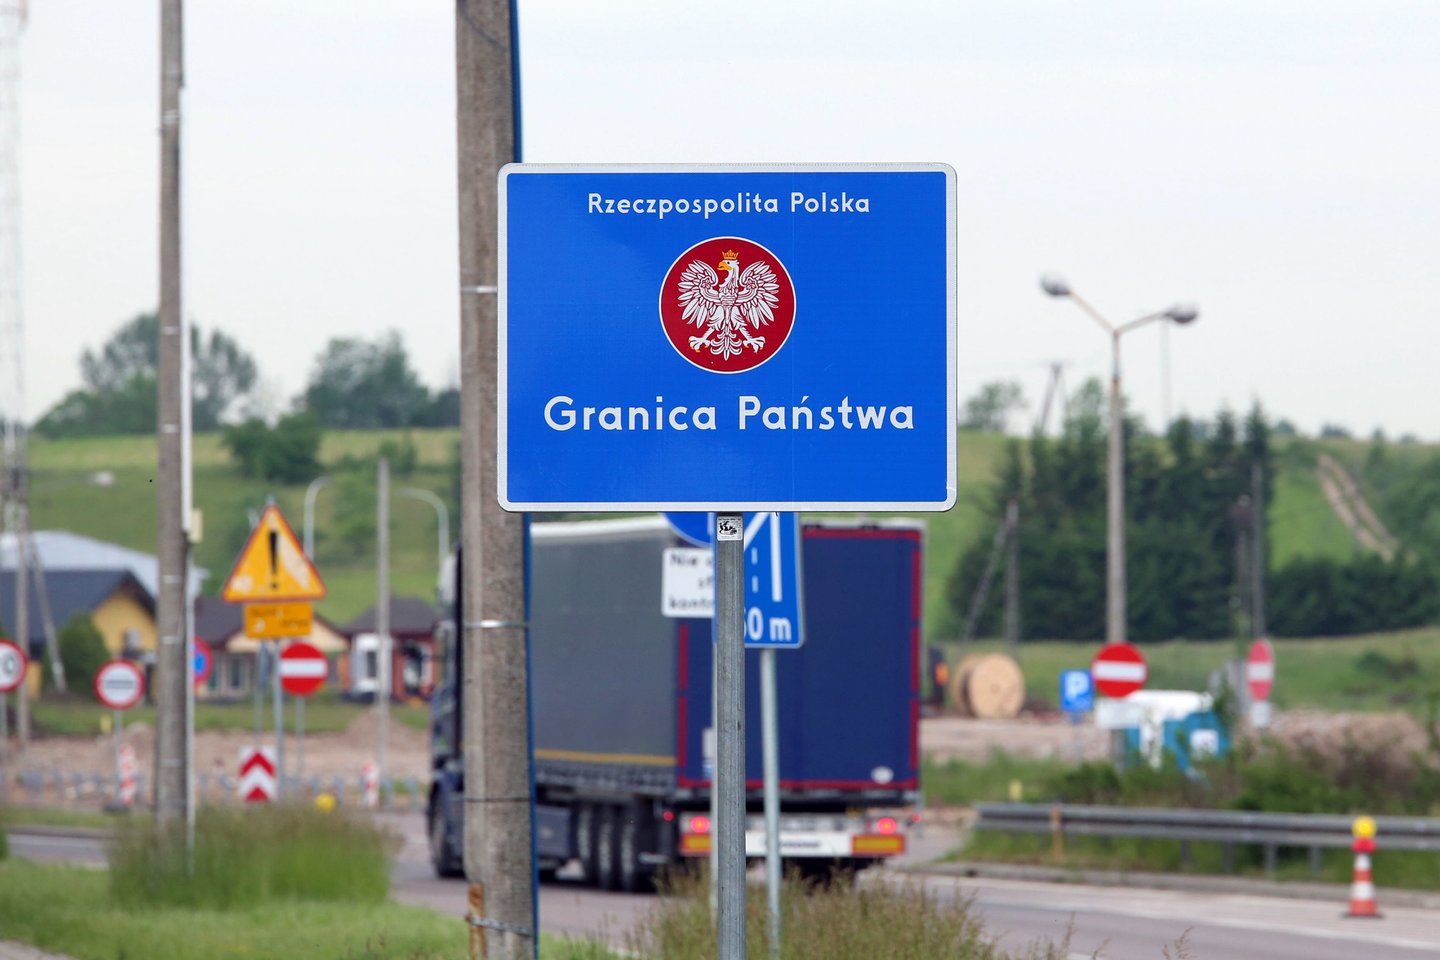 Baltijos šalys savo draudimo bendrovėms patarė neišduoti piliečiams žaliųjų kortelių, skirtų į Rusiją ir Baltarusiją vykstančioms transporto priemonėms.<br>M.Patašiaus nuotr.